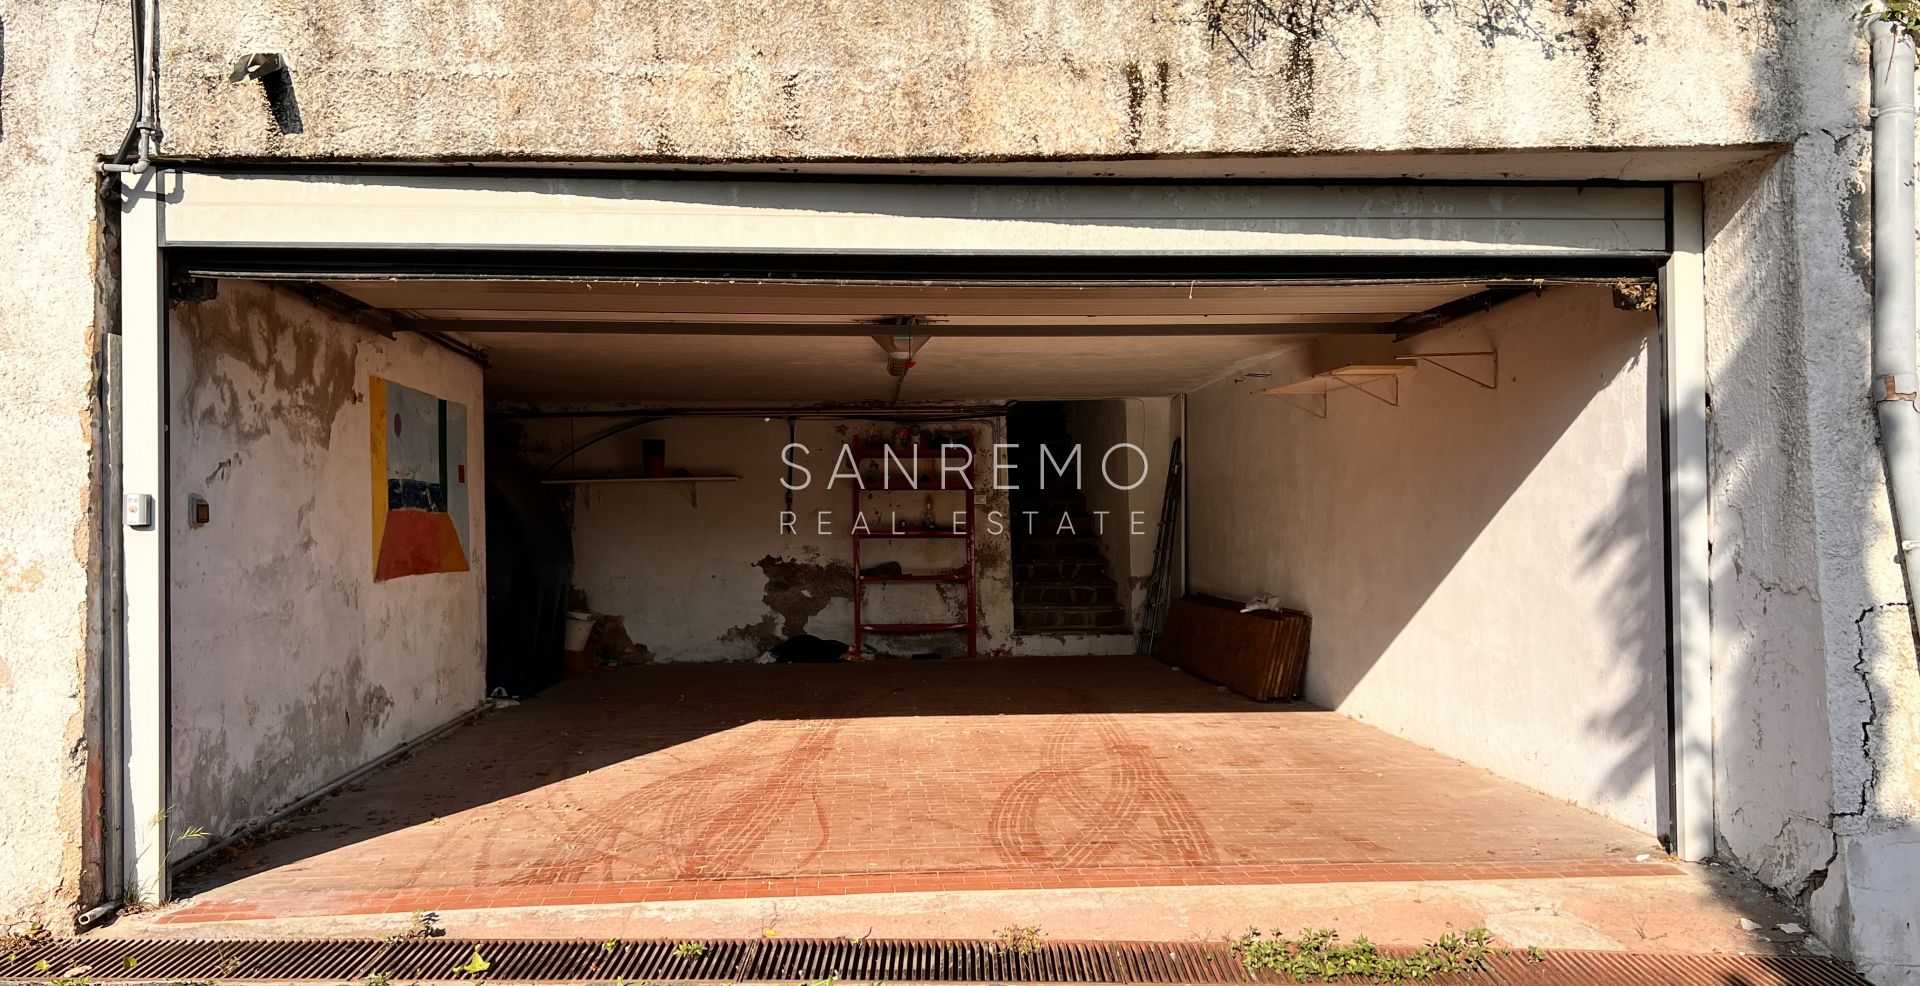 Maison, composée de 2 appartements indépendants, sur la première colline de Sanremo